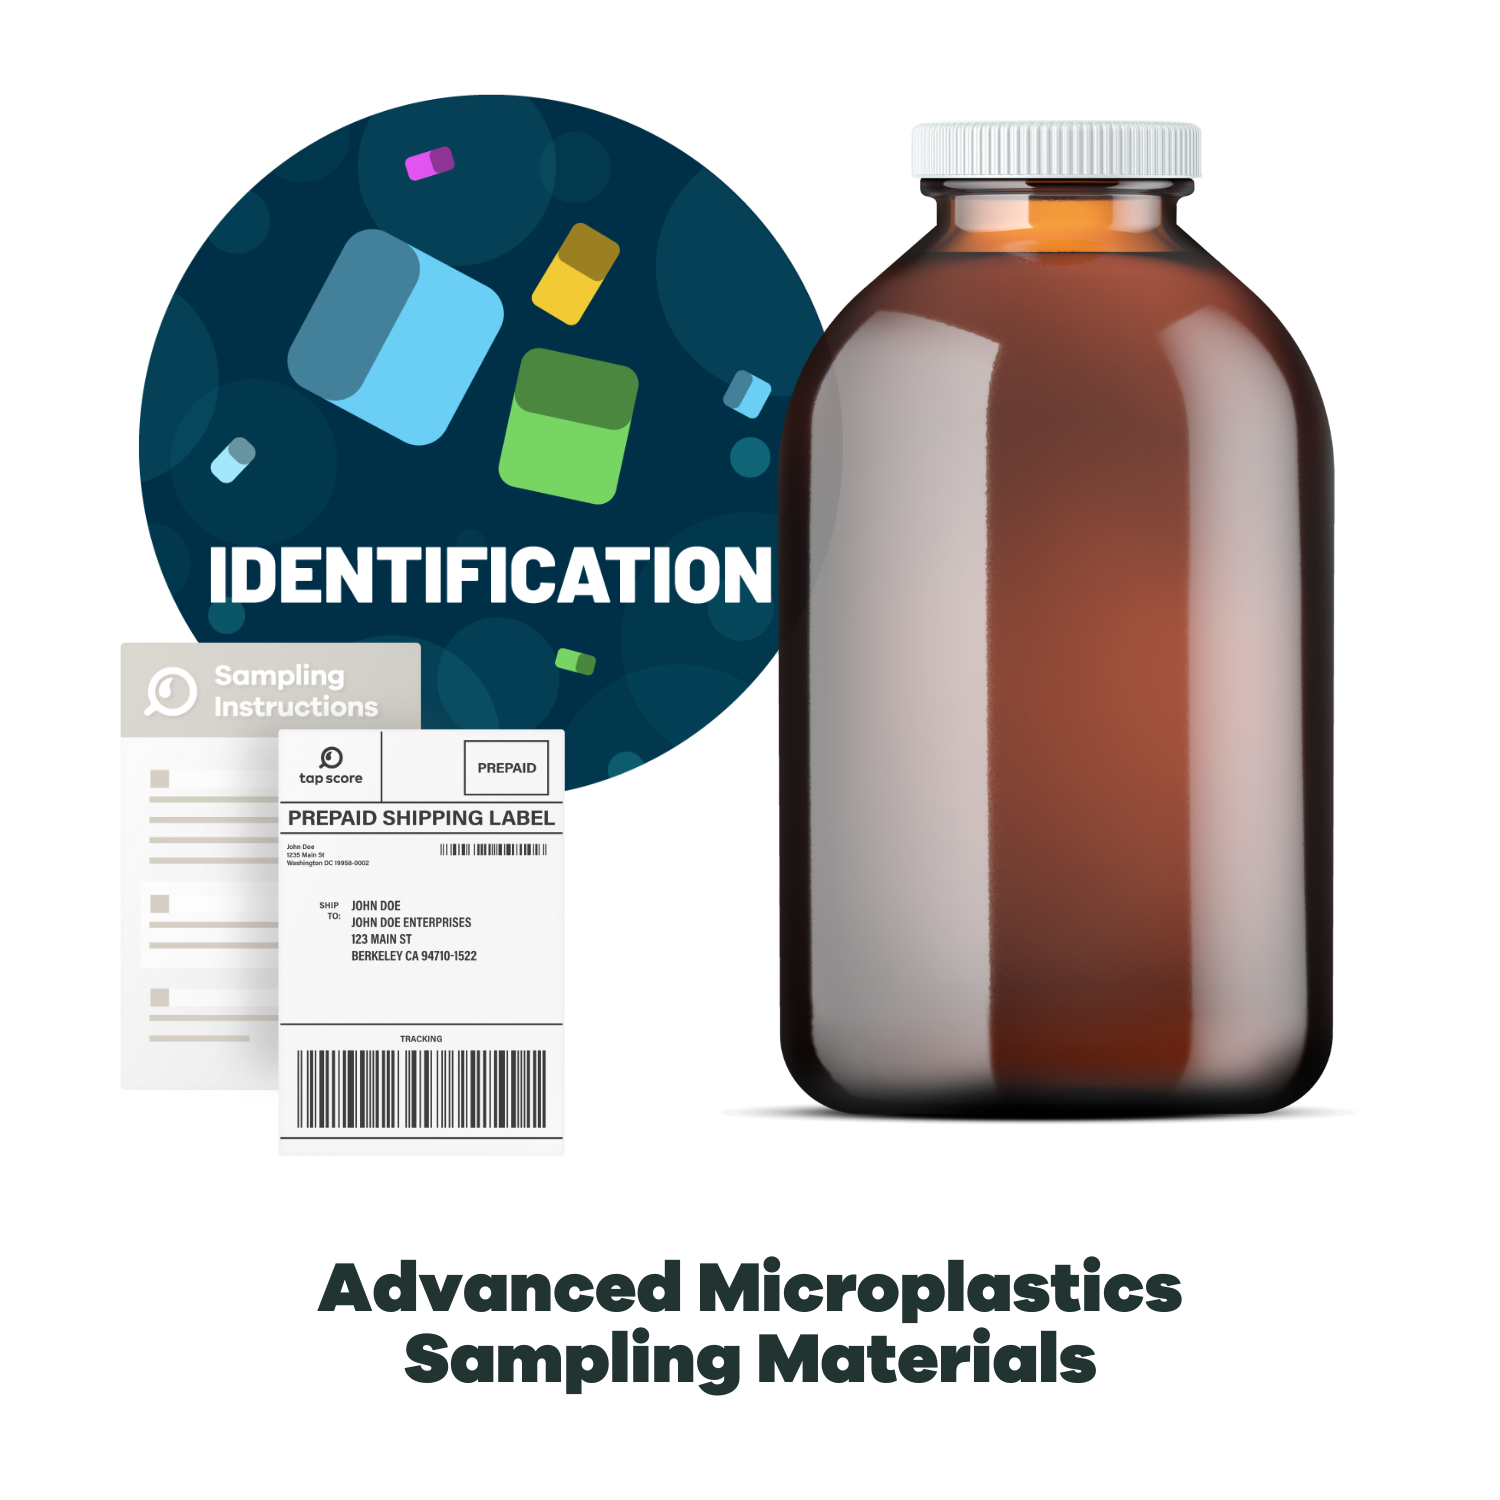 Advanced Microplastics Laboratory Test Kit Materials